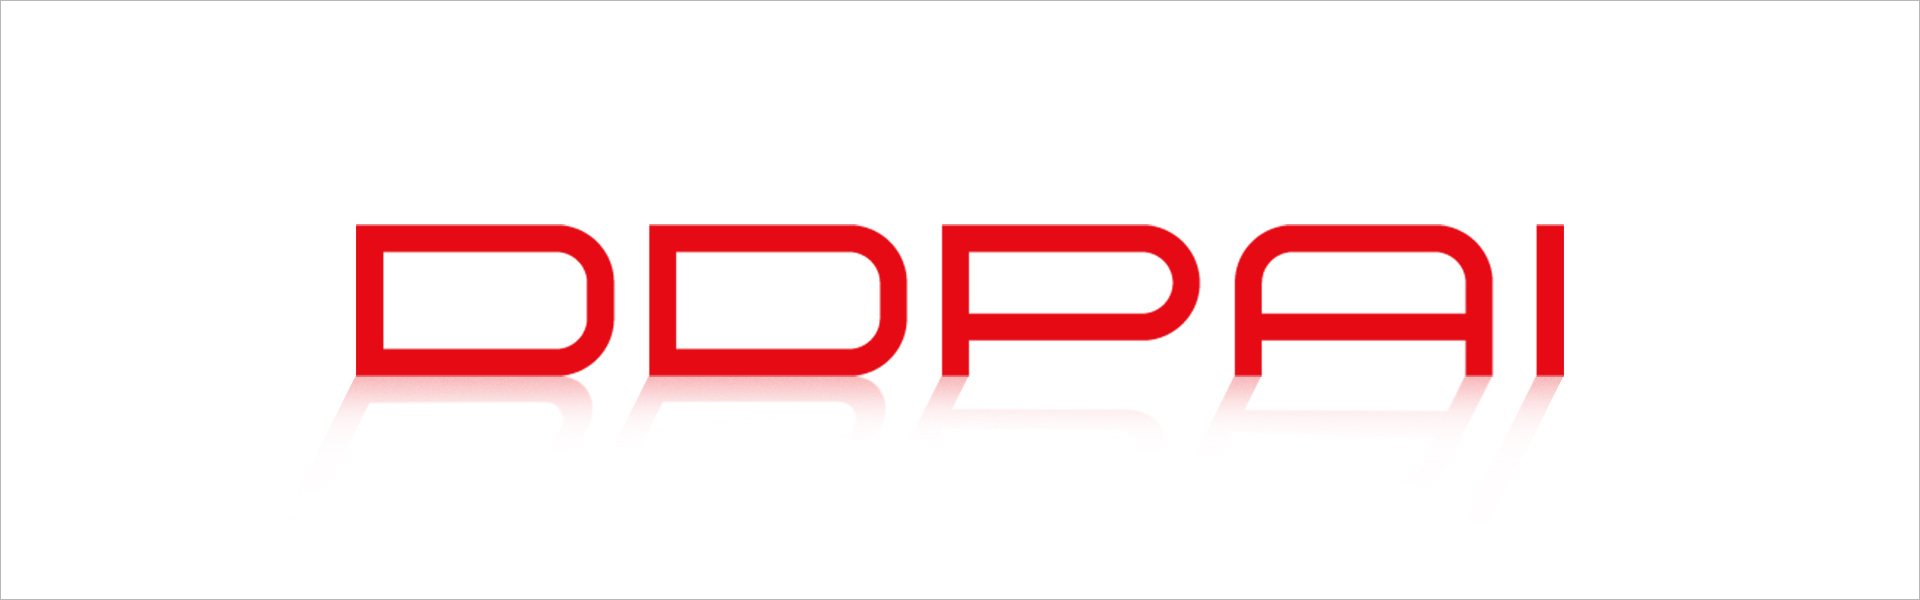 Videosalvesti Xiaomi DDPAI Mola A2 Full HD WIFI 1080P DDPai